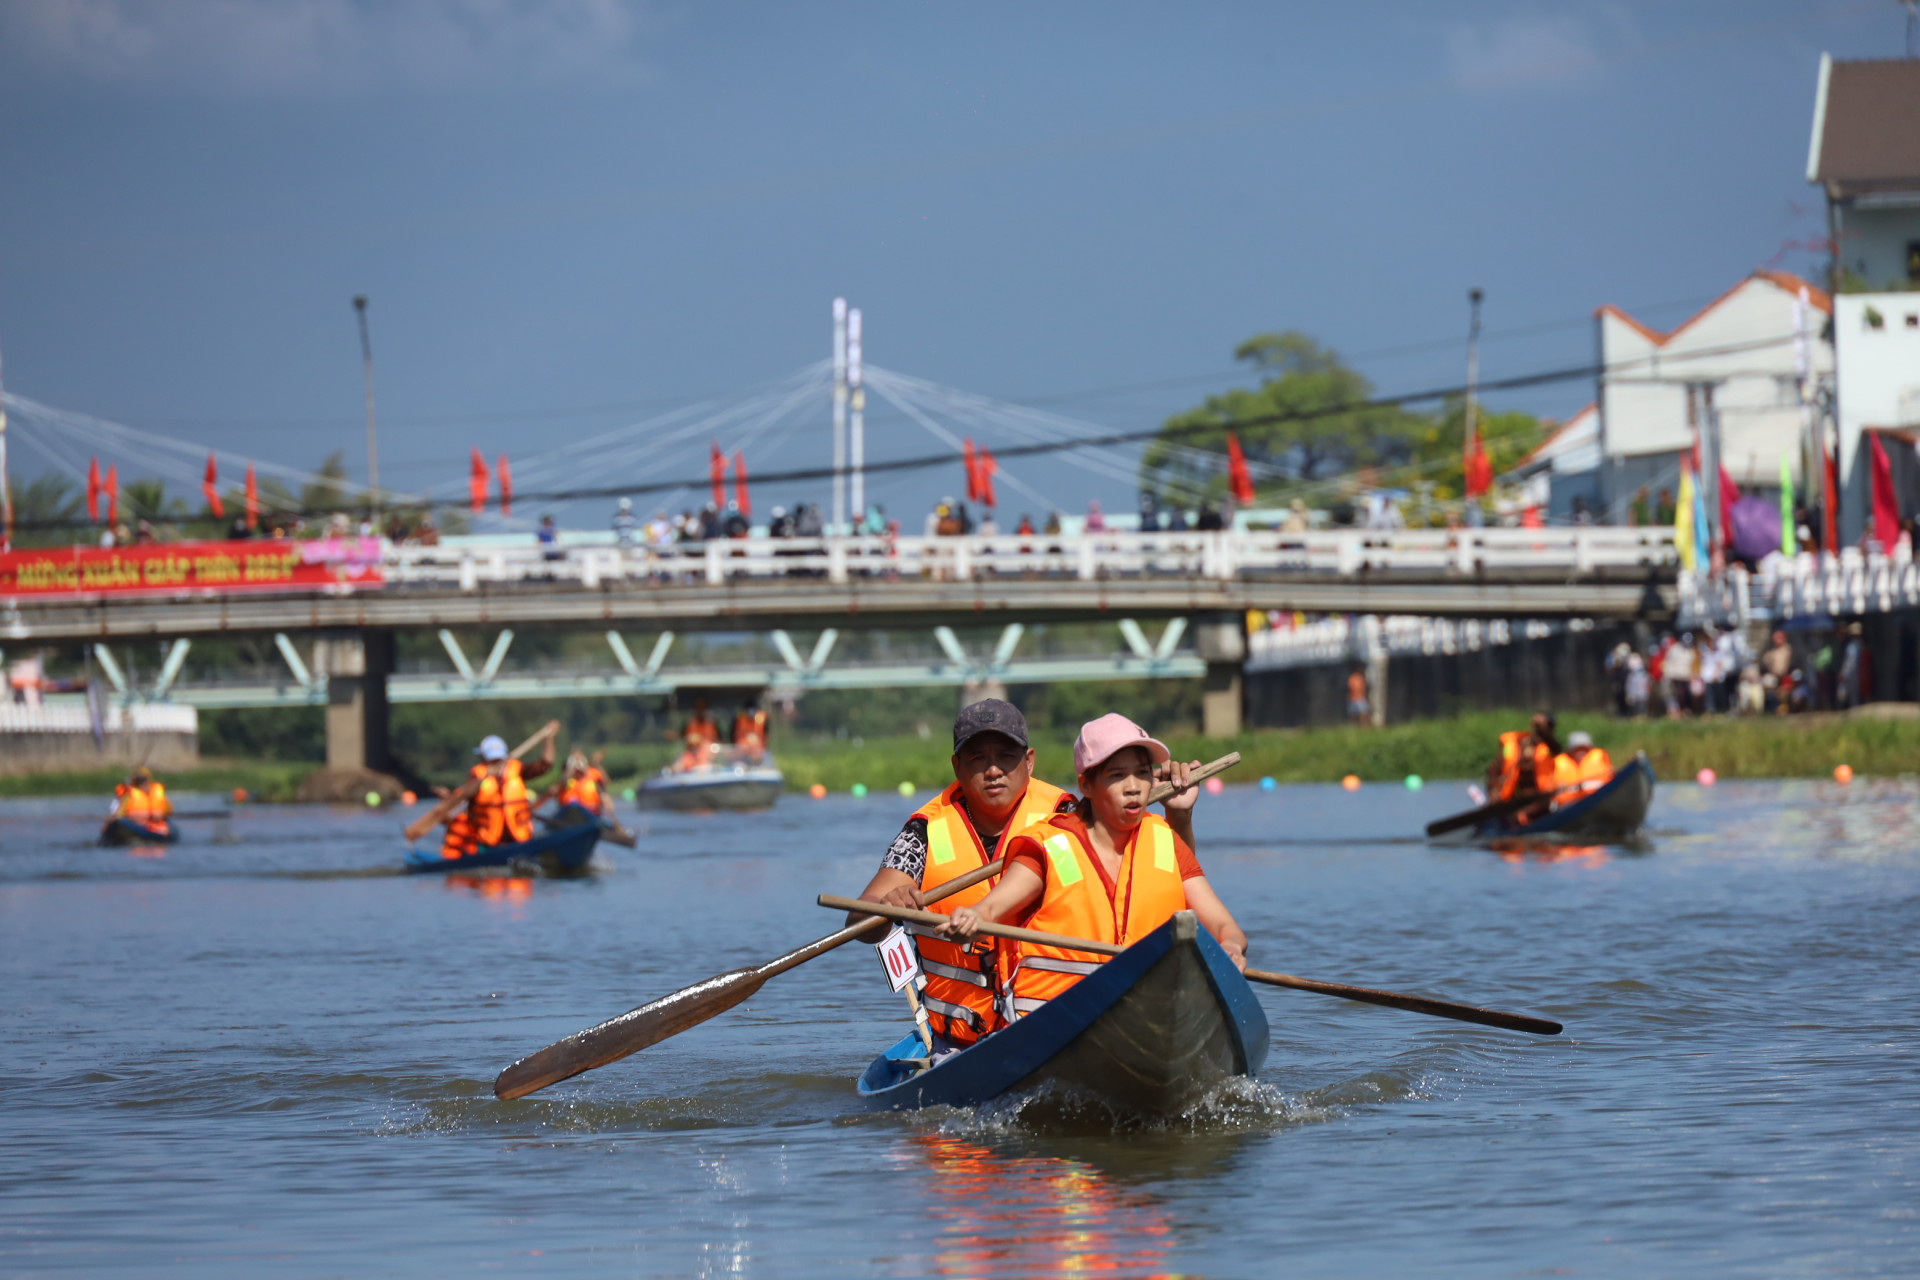 Nội dung đua thuyền truyền thống đôi nam nữ được trông chờ nhất lễ hội.